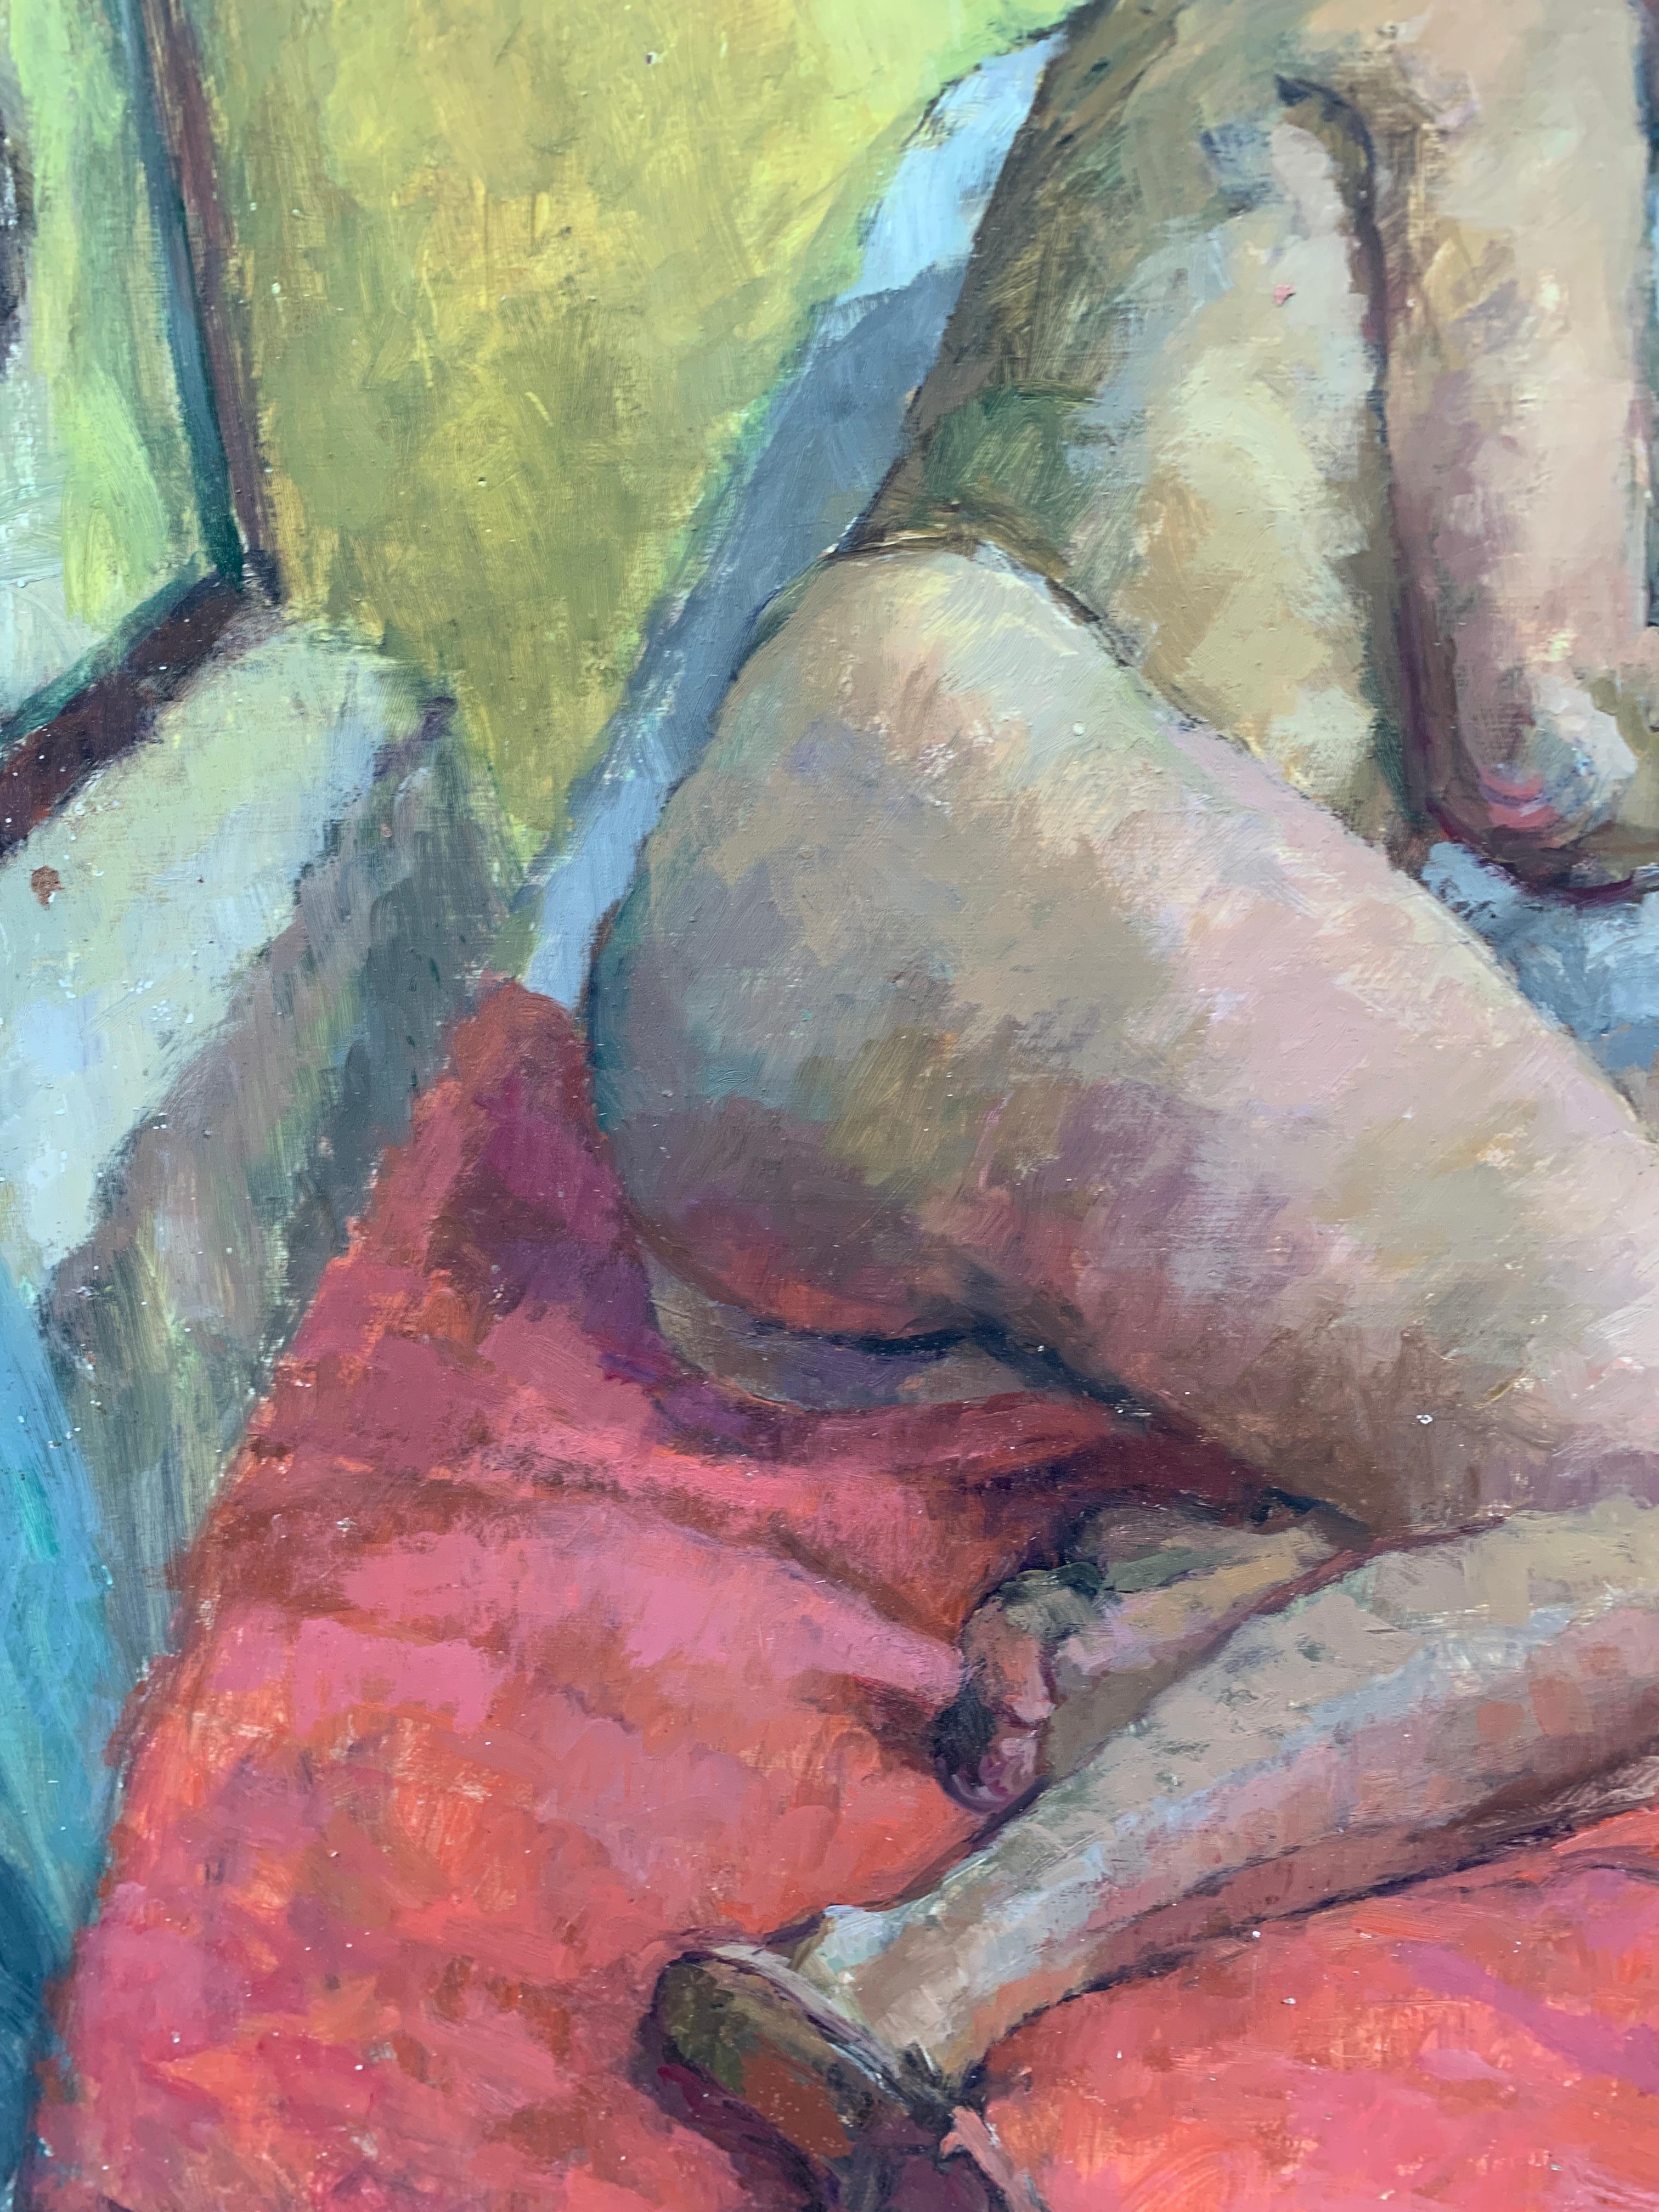 Gut gemaltes englisches Porträt einer nackten Frau aus der Mitte des Jahrhunderts (1950), die auf einem Bett liegt.

Der Künstler war ein Porträt- und Figurenmaler, der in den 1950er und 1960er Jahren tätig war

Öle auf Malerkarton

Aus einer